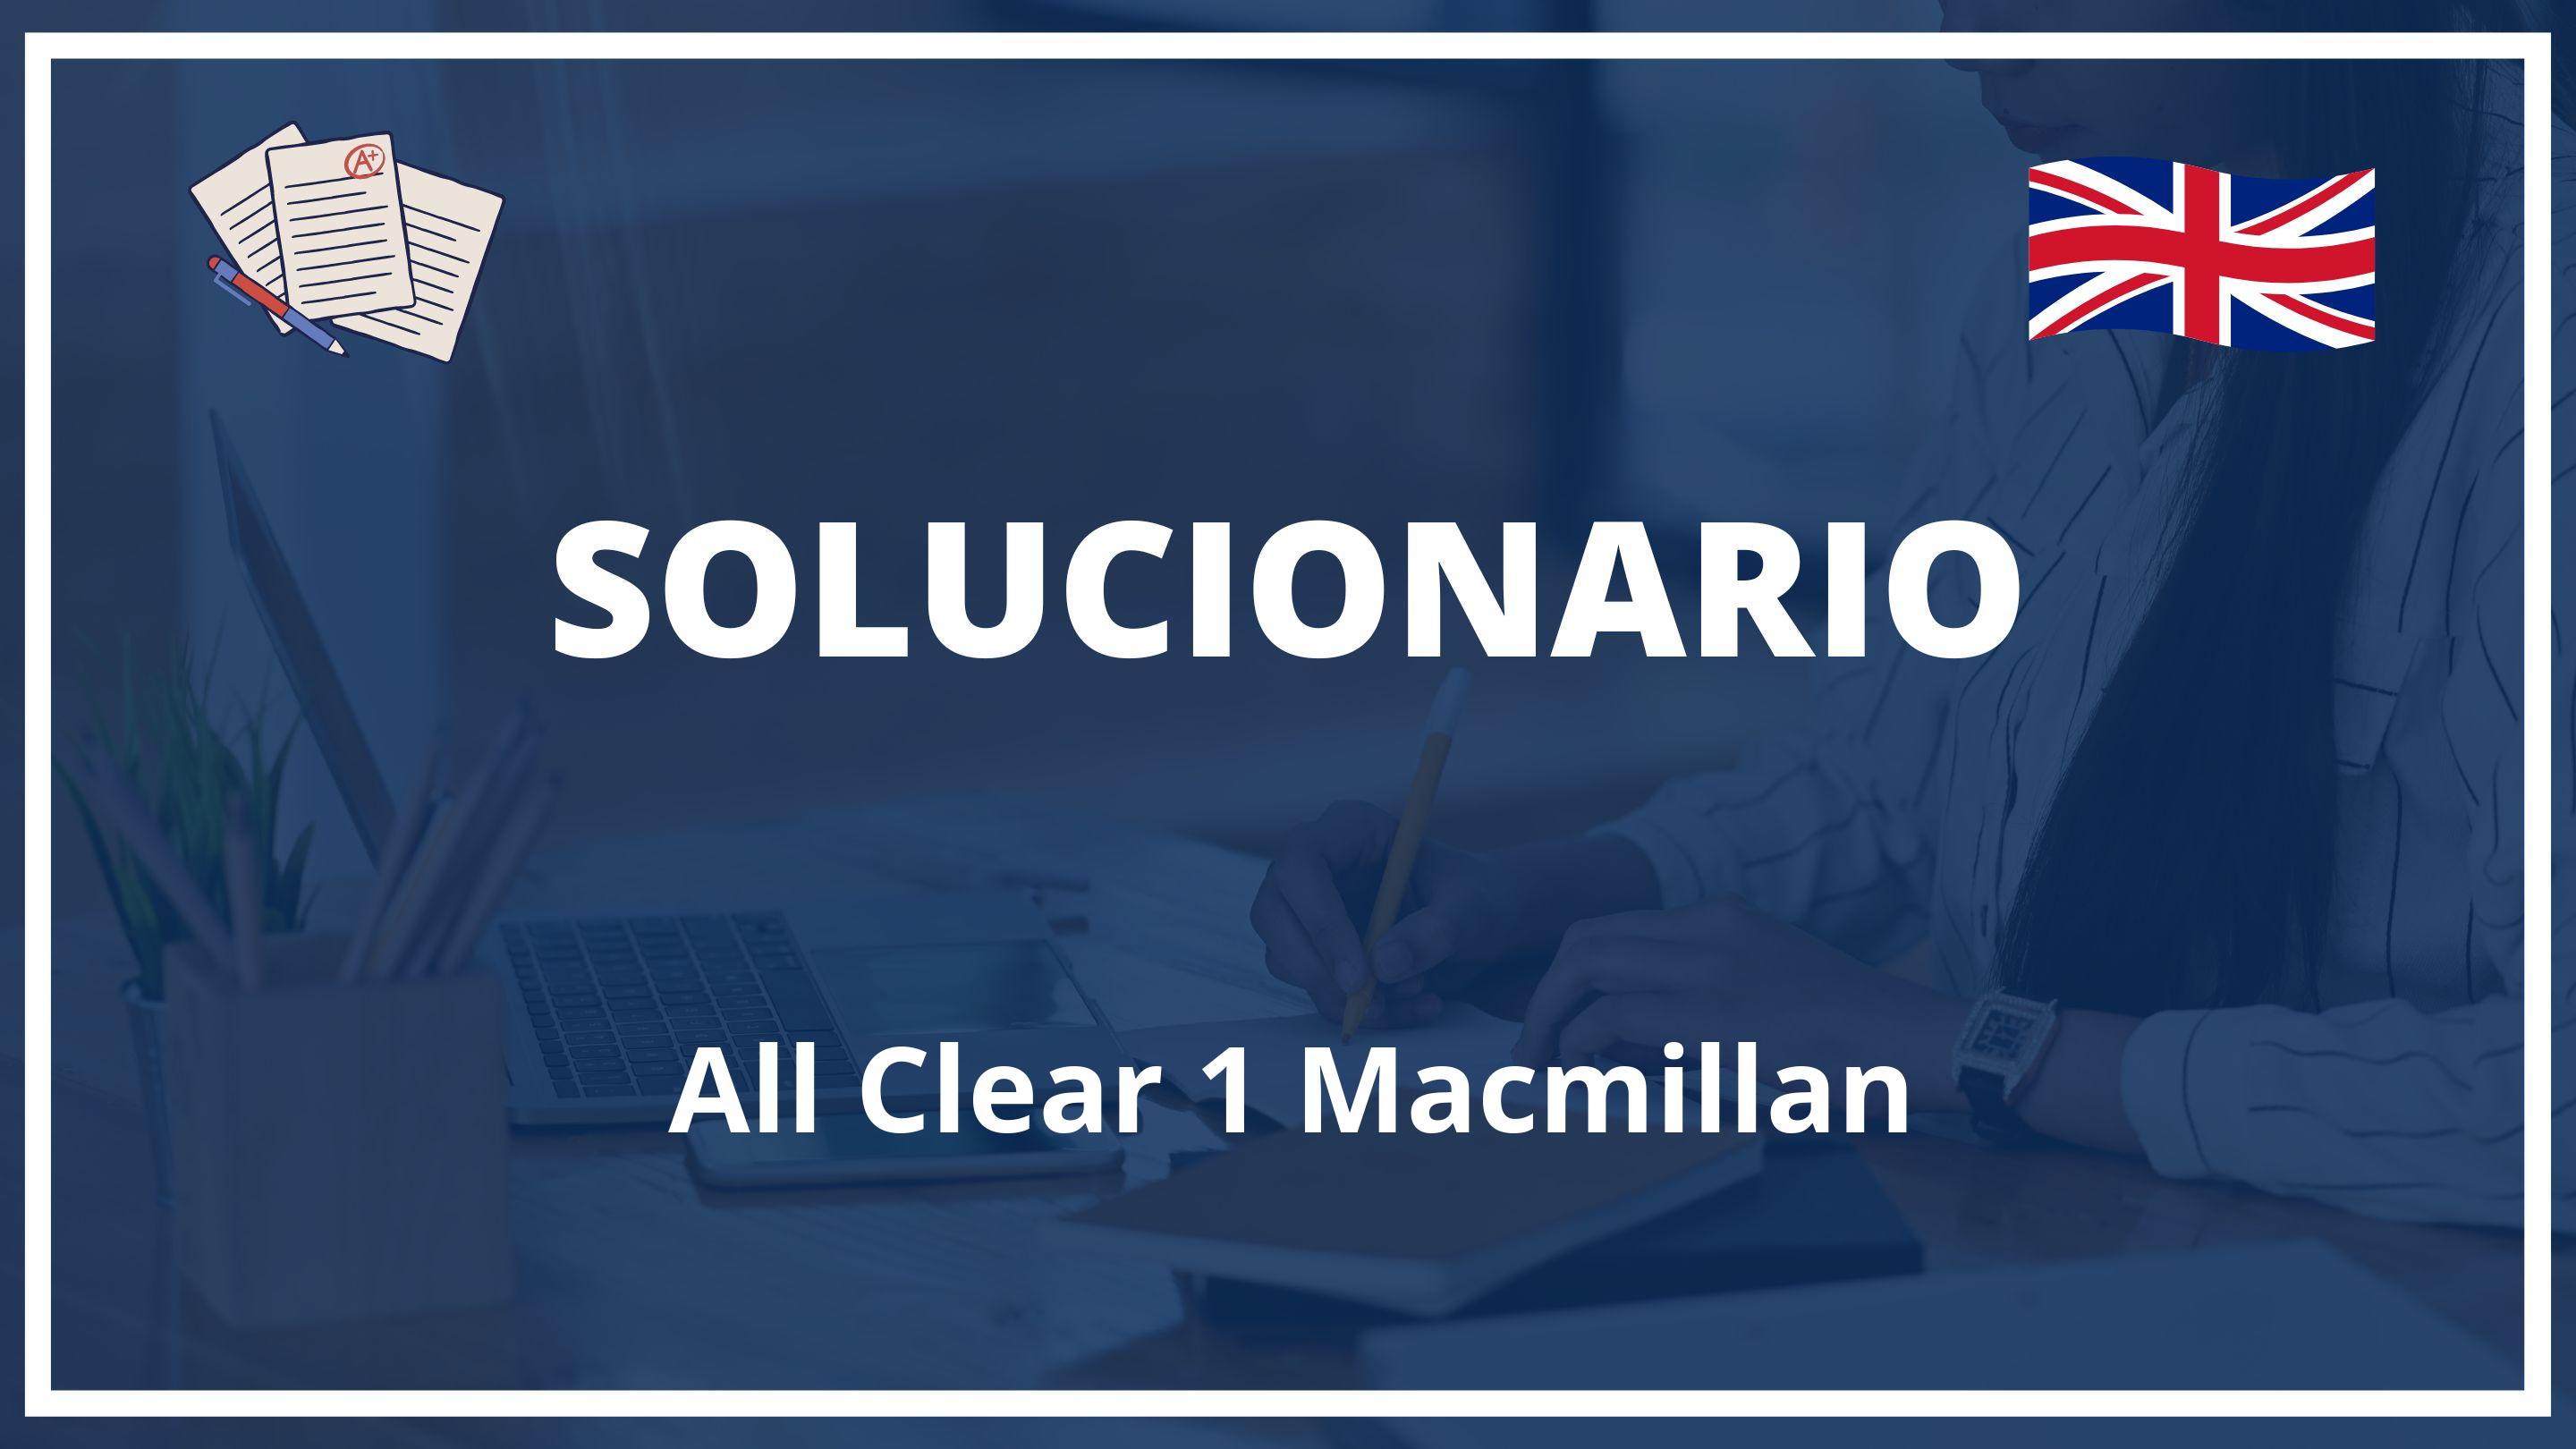 All Clear 1 Macmillan